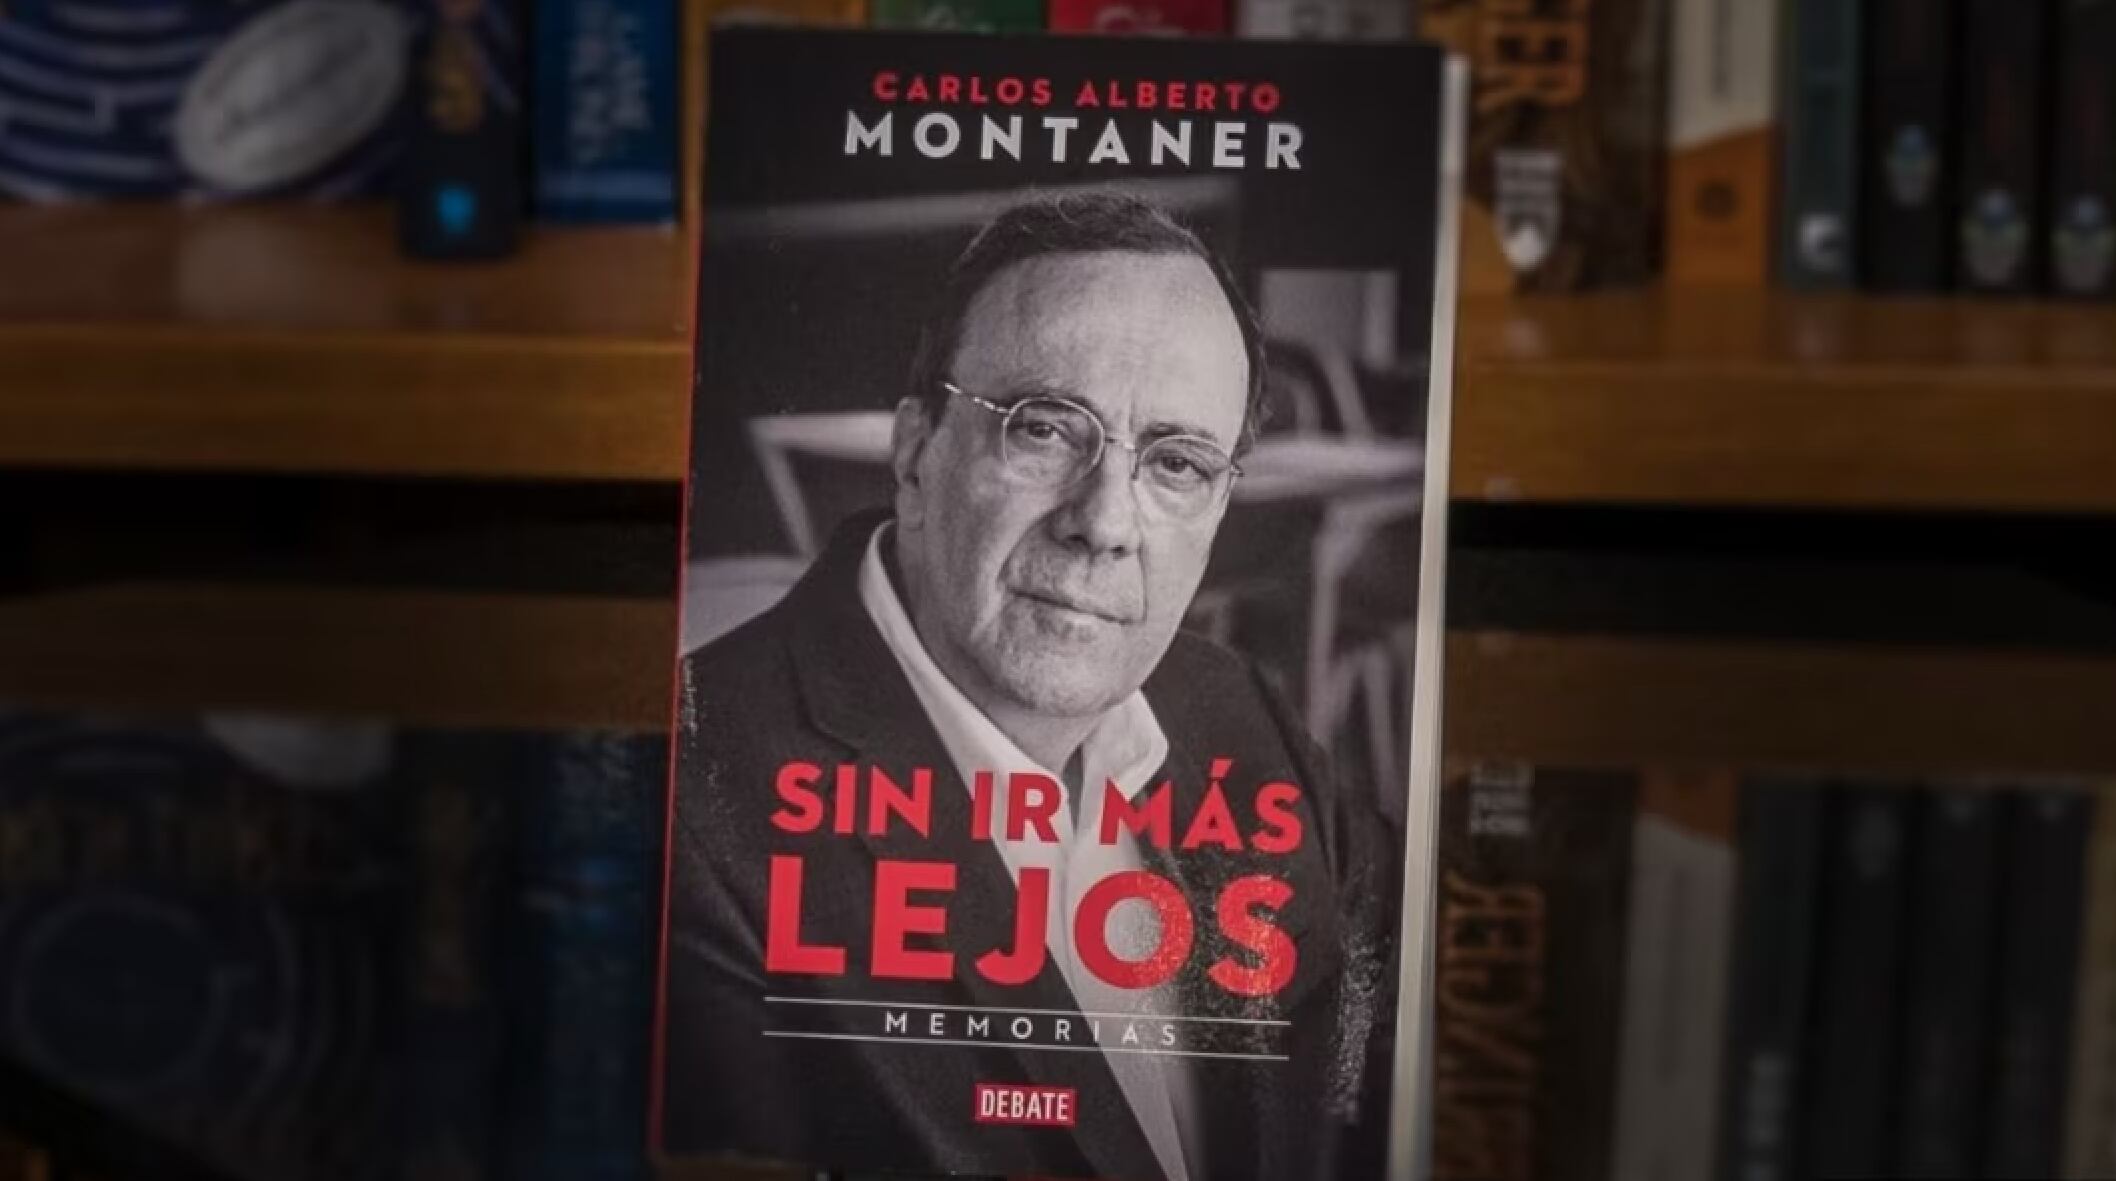 Portada del libro de Carlos Alberto Montaner. Imagen tomada del sitio oficial de Radio Televisión Martí.